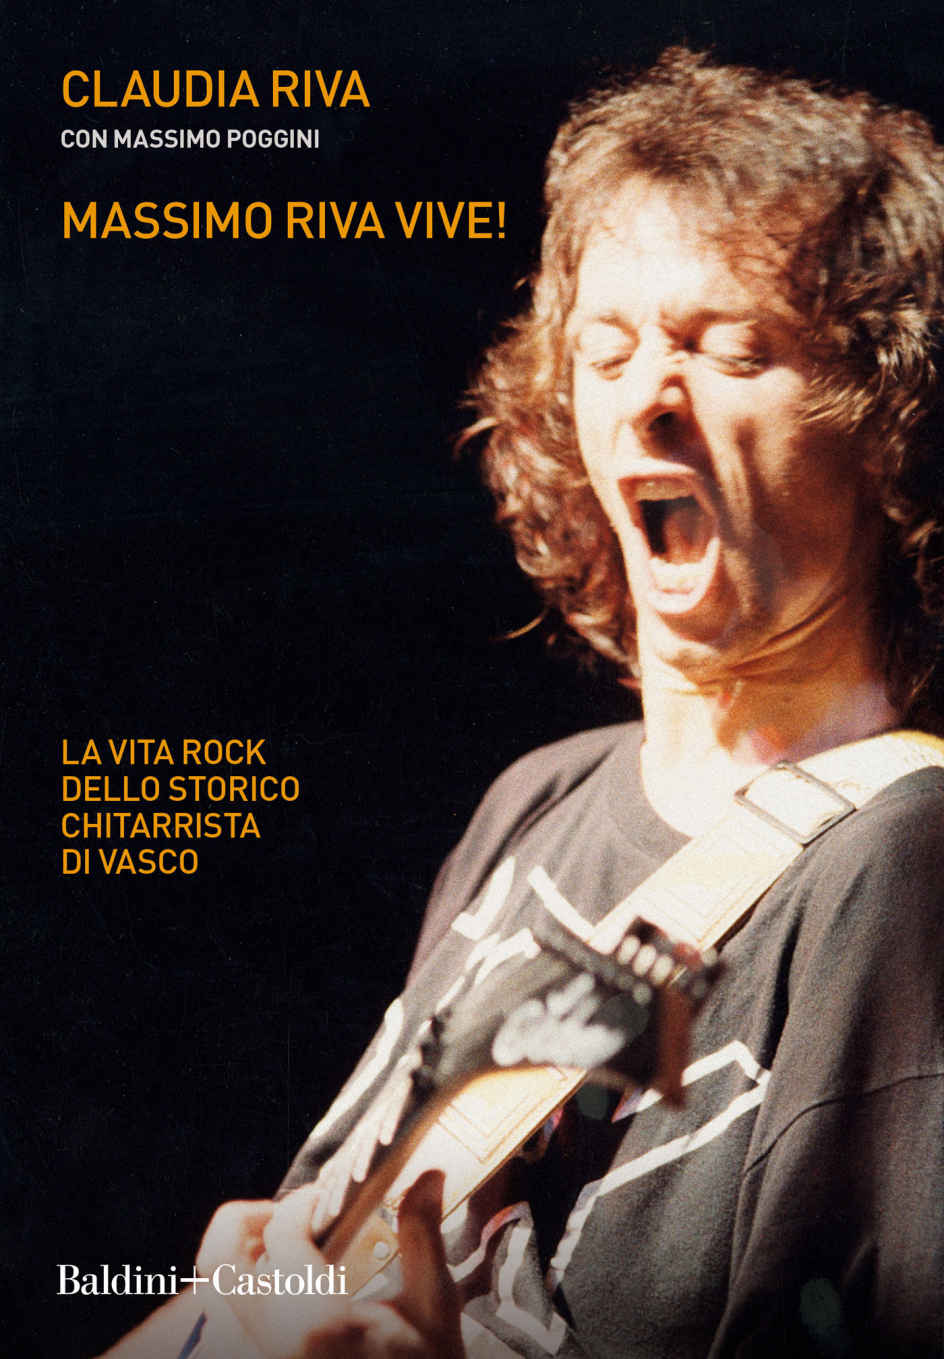 Recensione di Massimo Riva Vive! – Claudia Riva